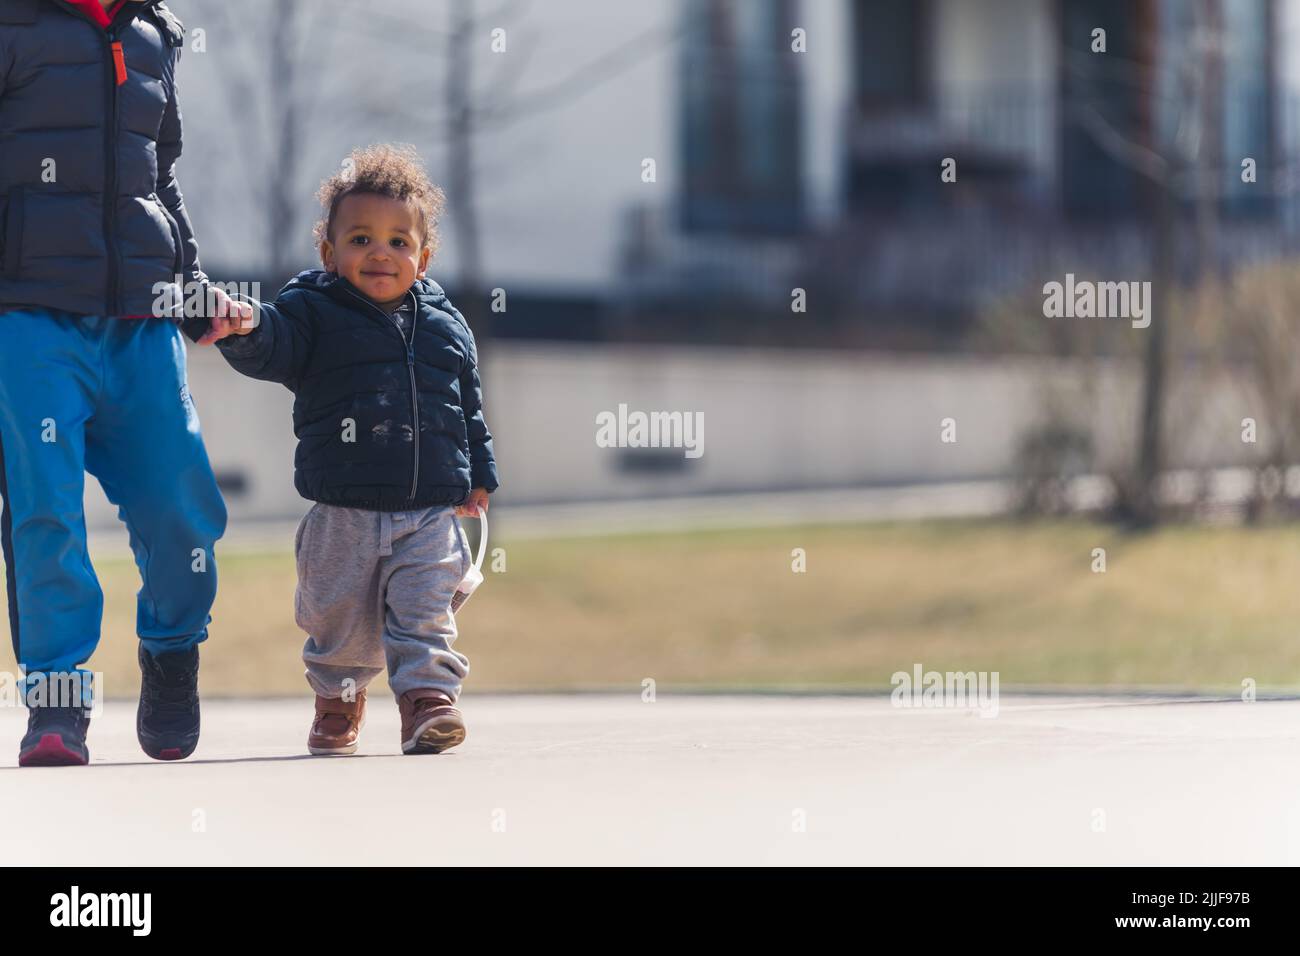 Pequeño niño afroamericano caminando fuera con su amigo. Fotografía de alta calidad Foto de stock